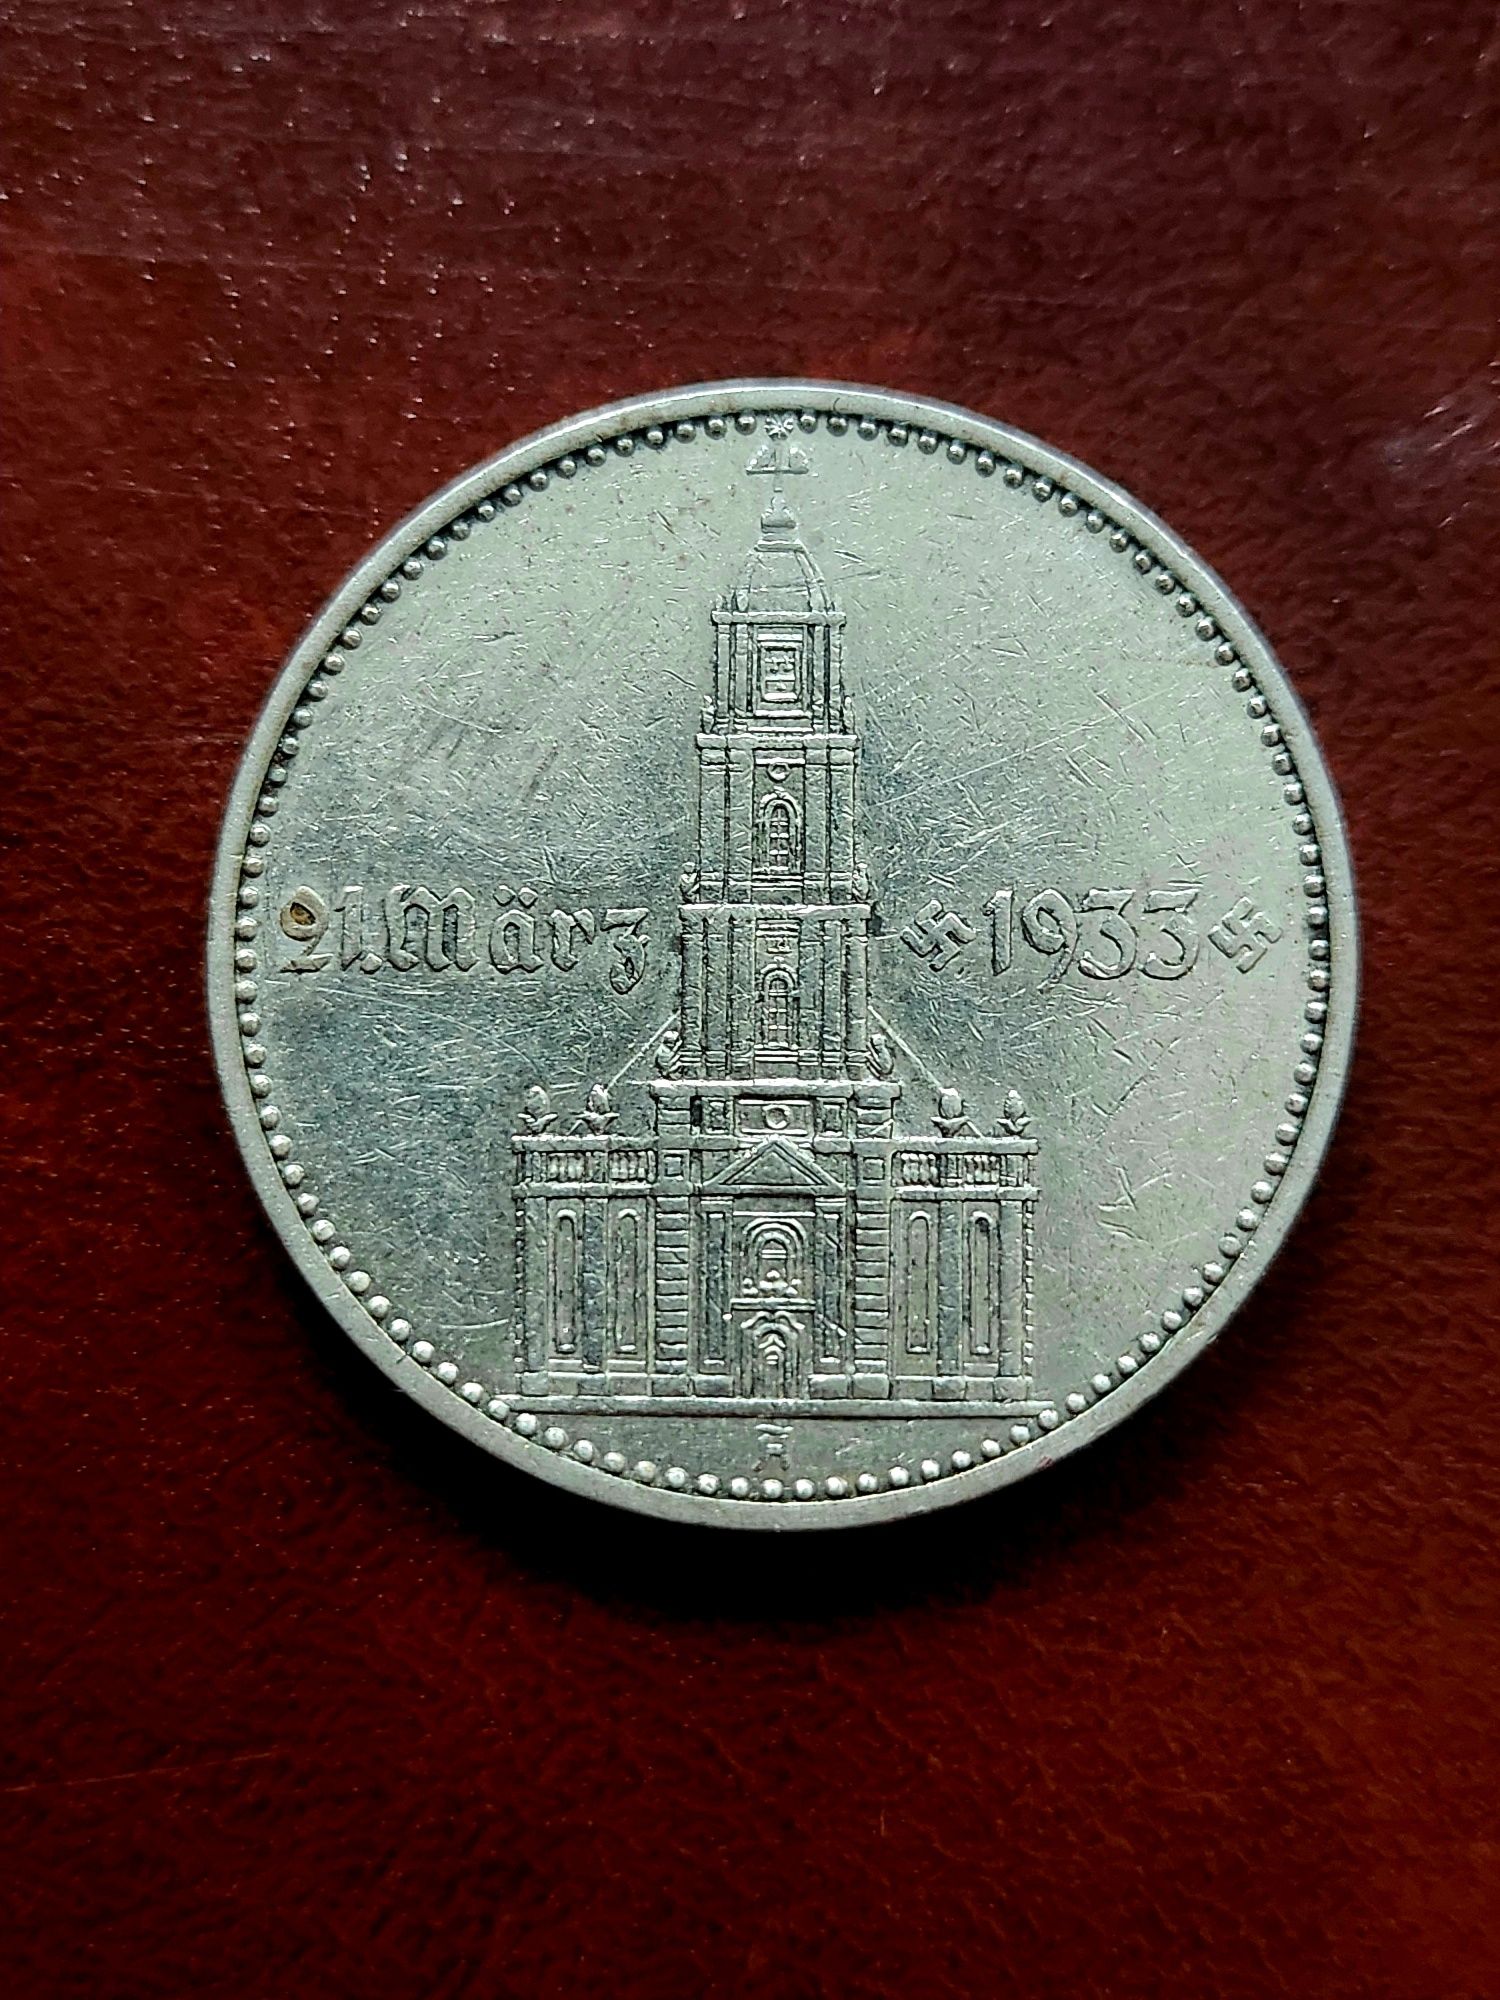 2 Reichs Mark 1934,   Argint